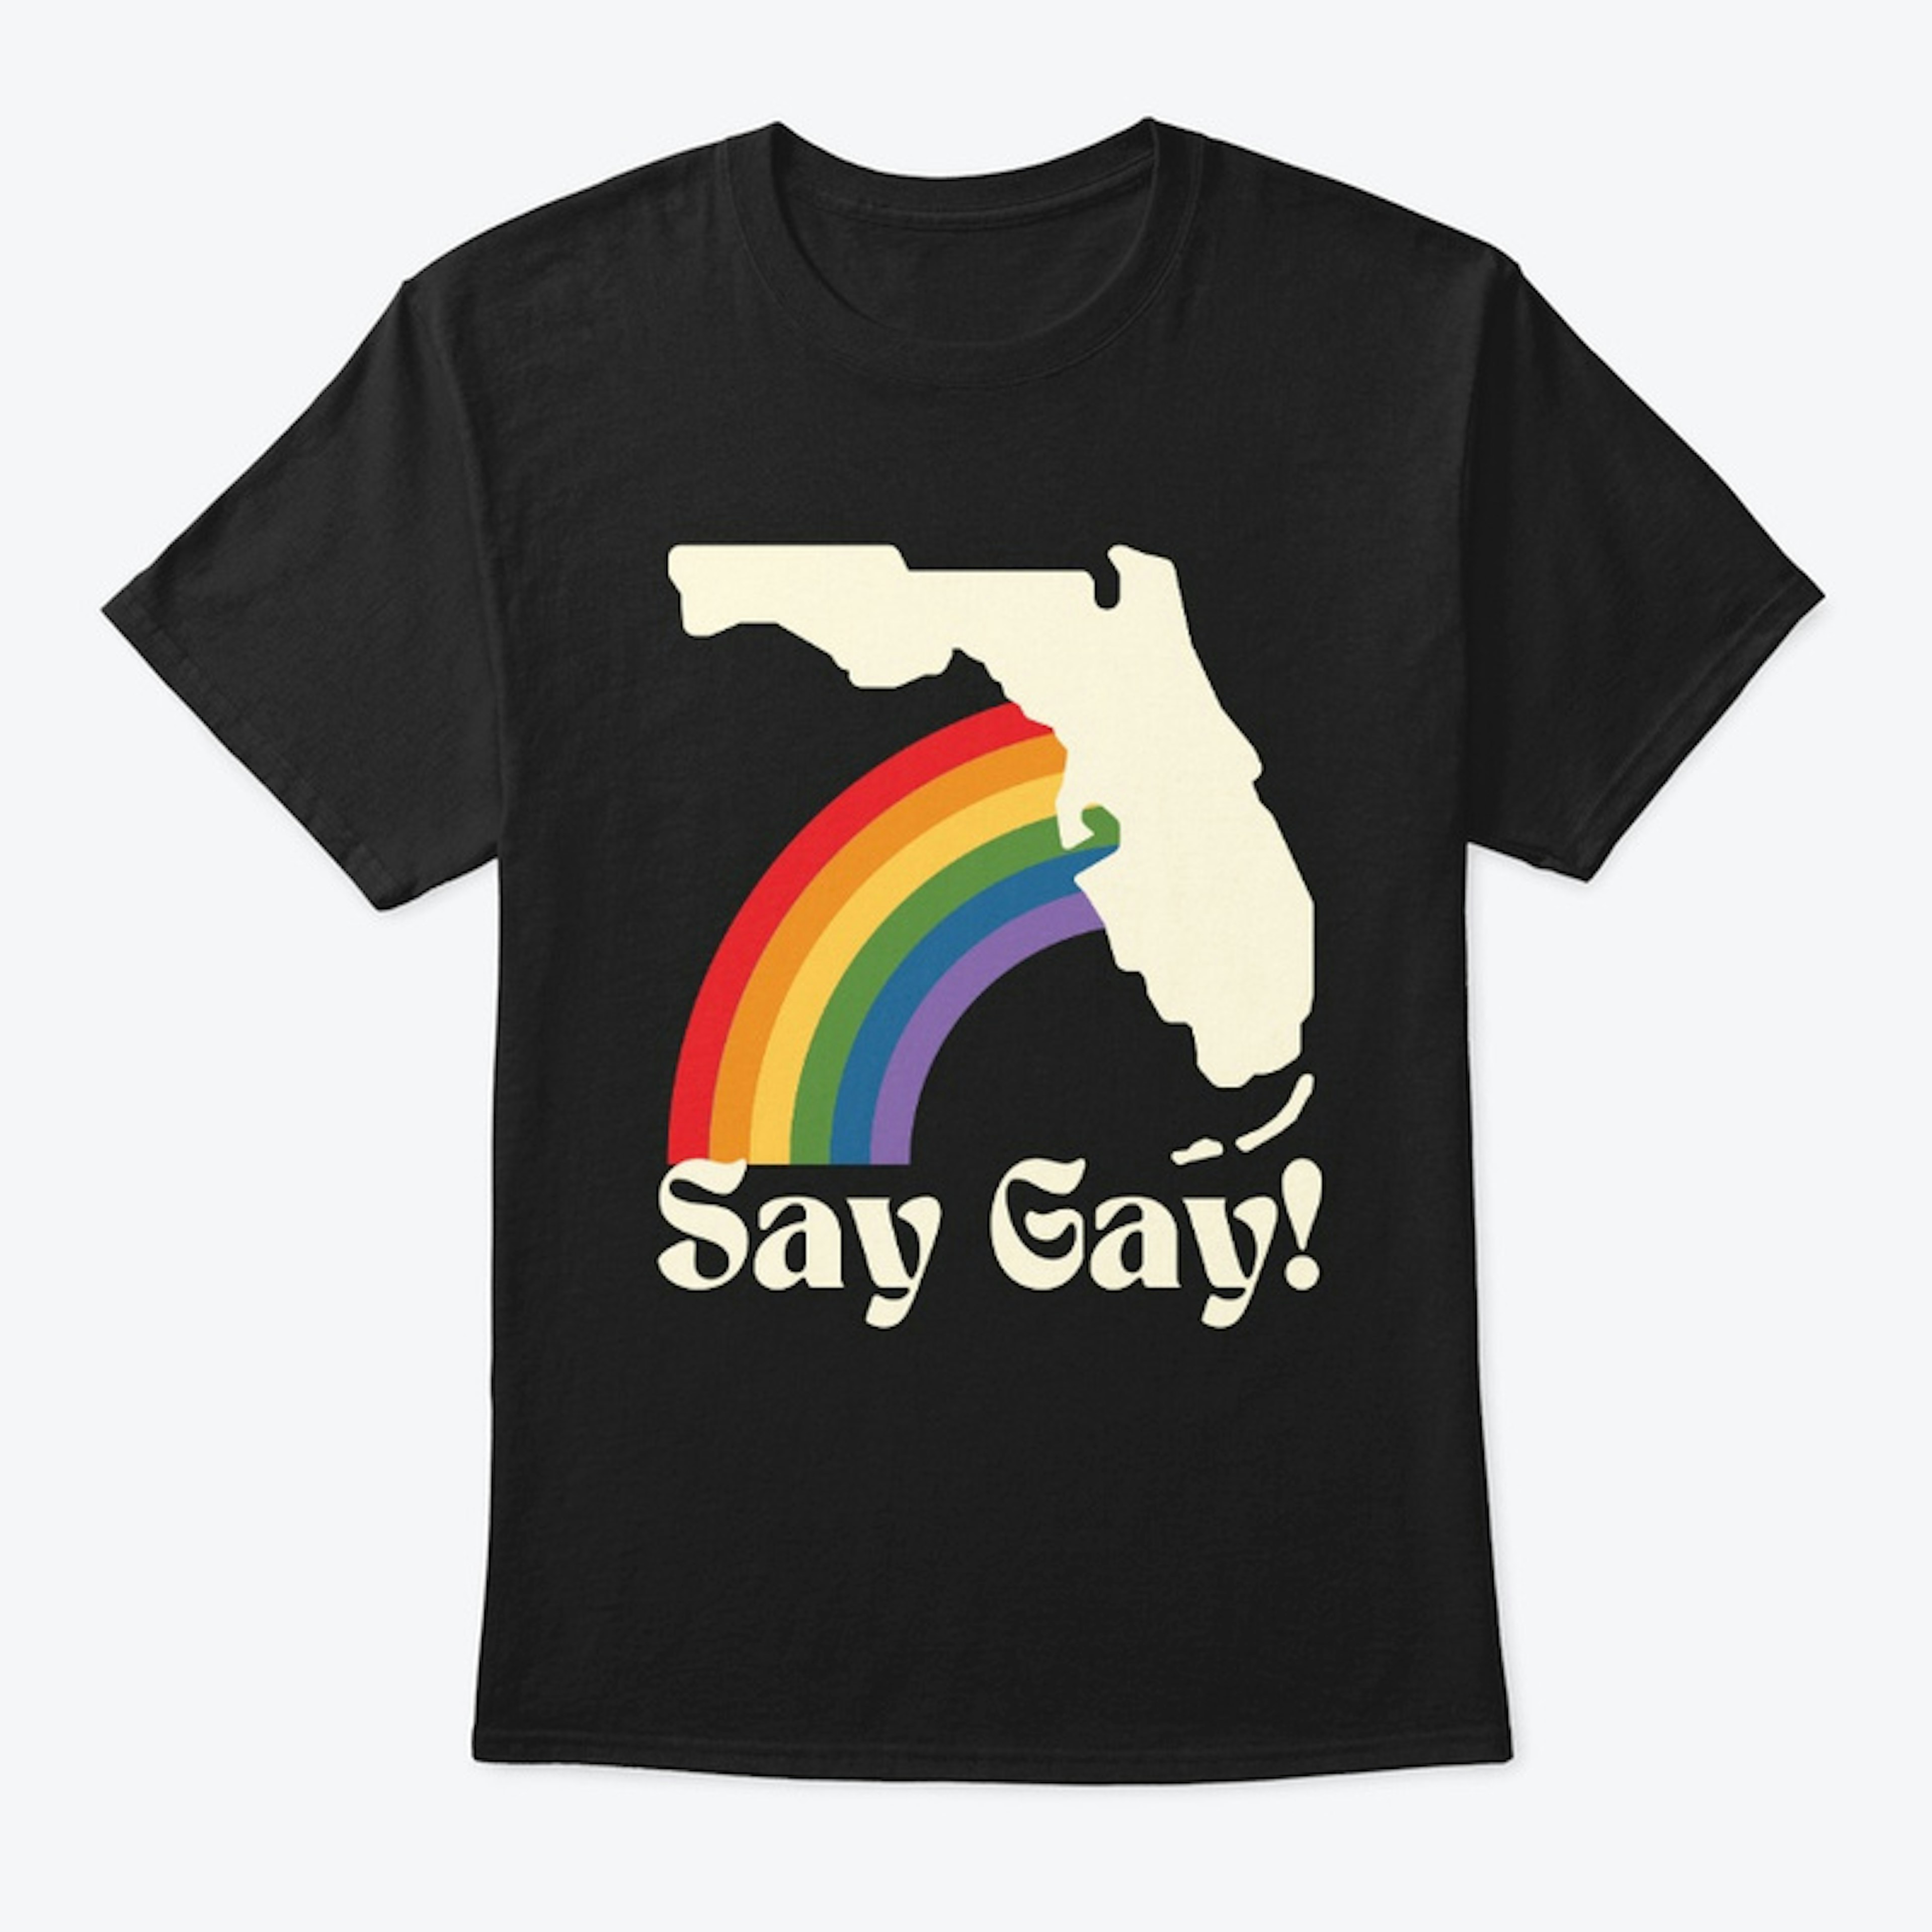 Say Gay!